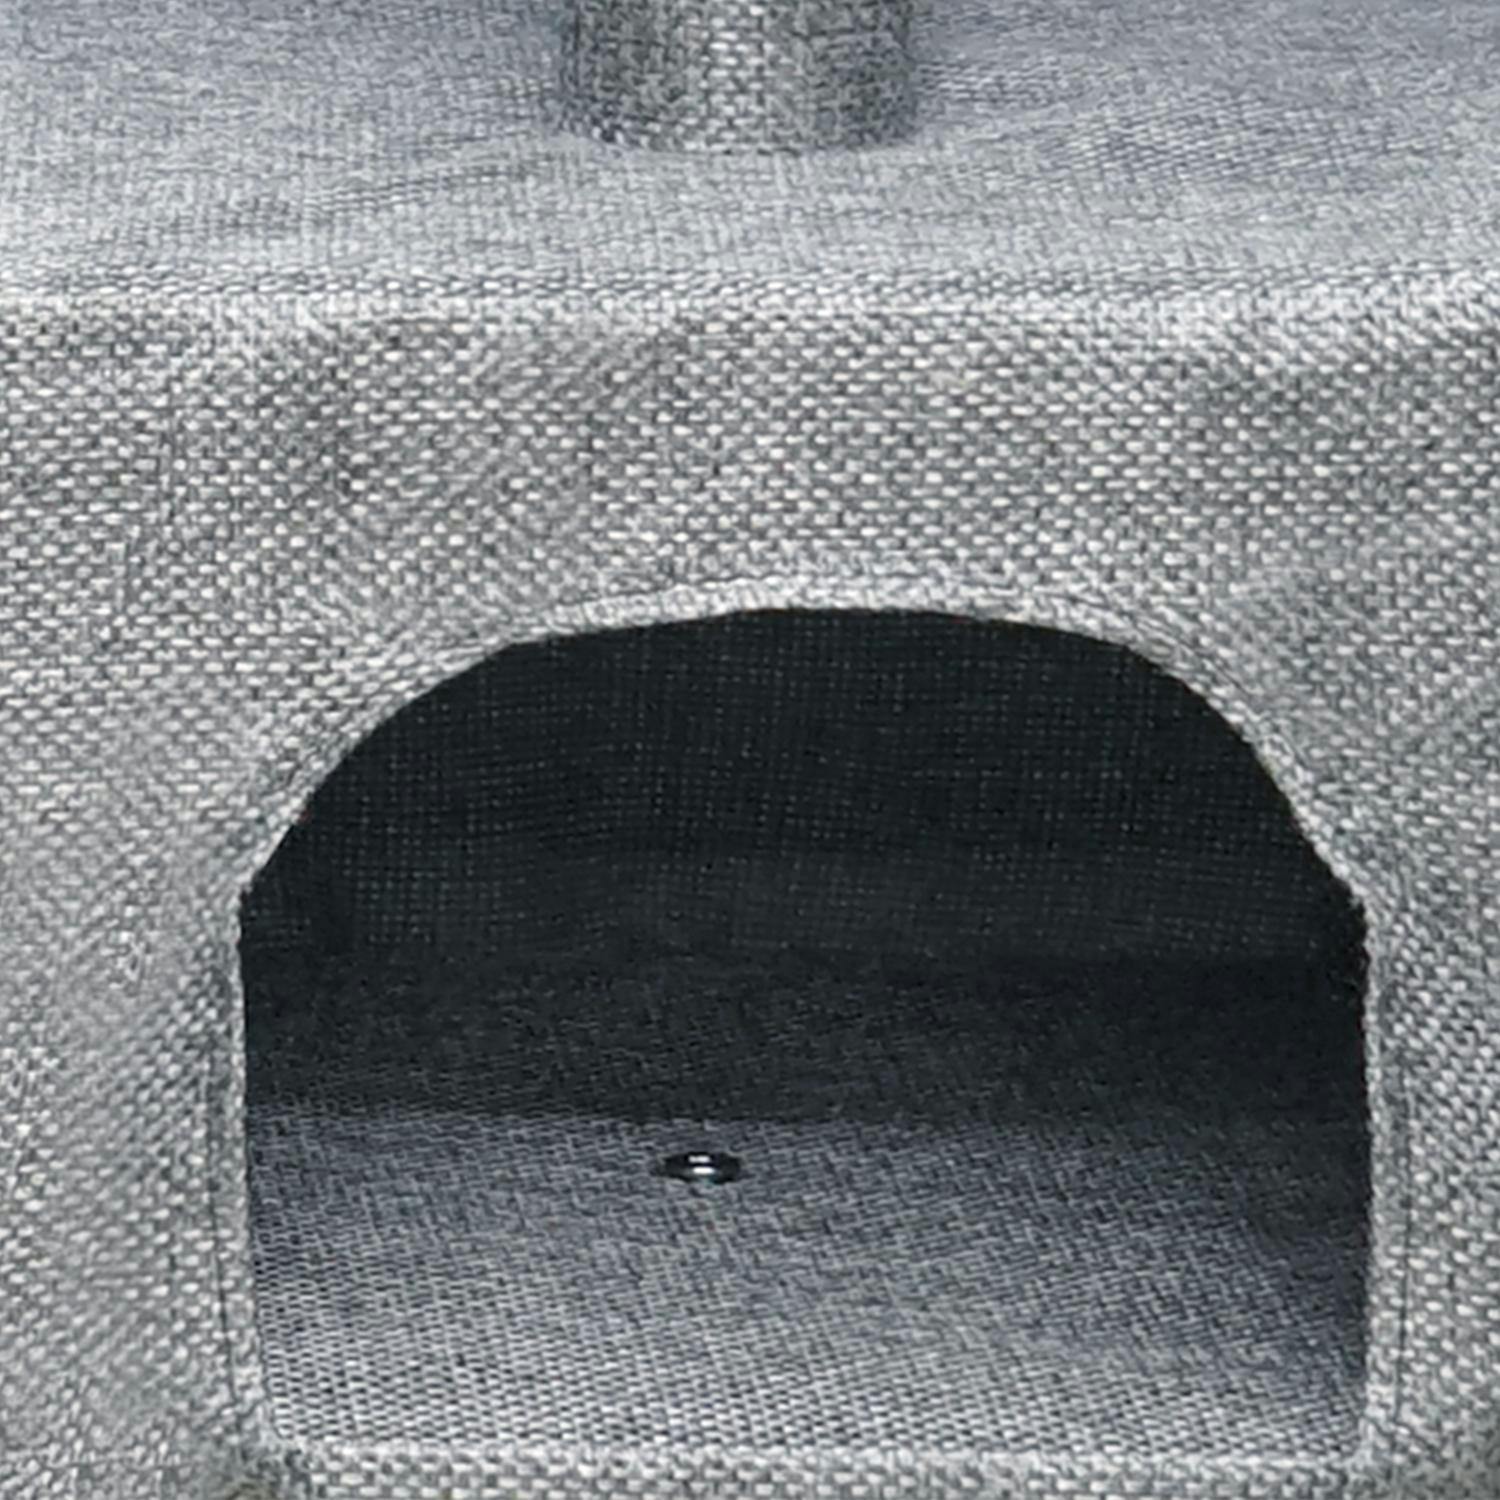 헬로망치 프리미엄 중형 직조 캣타워 W520 3번째 이미지